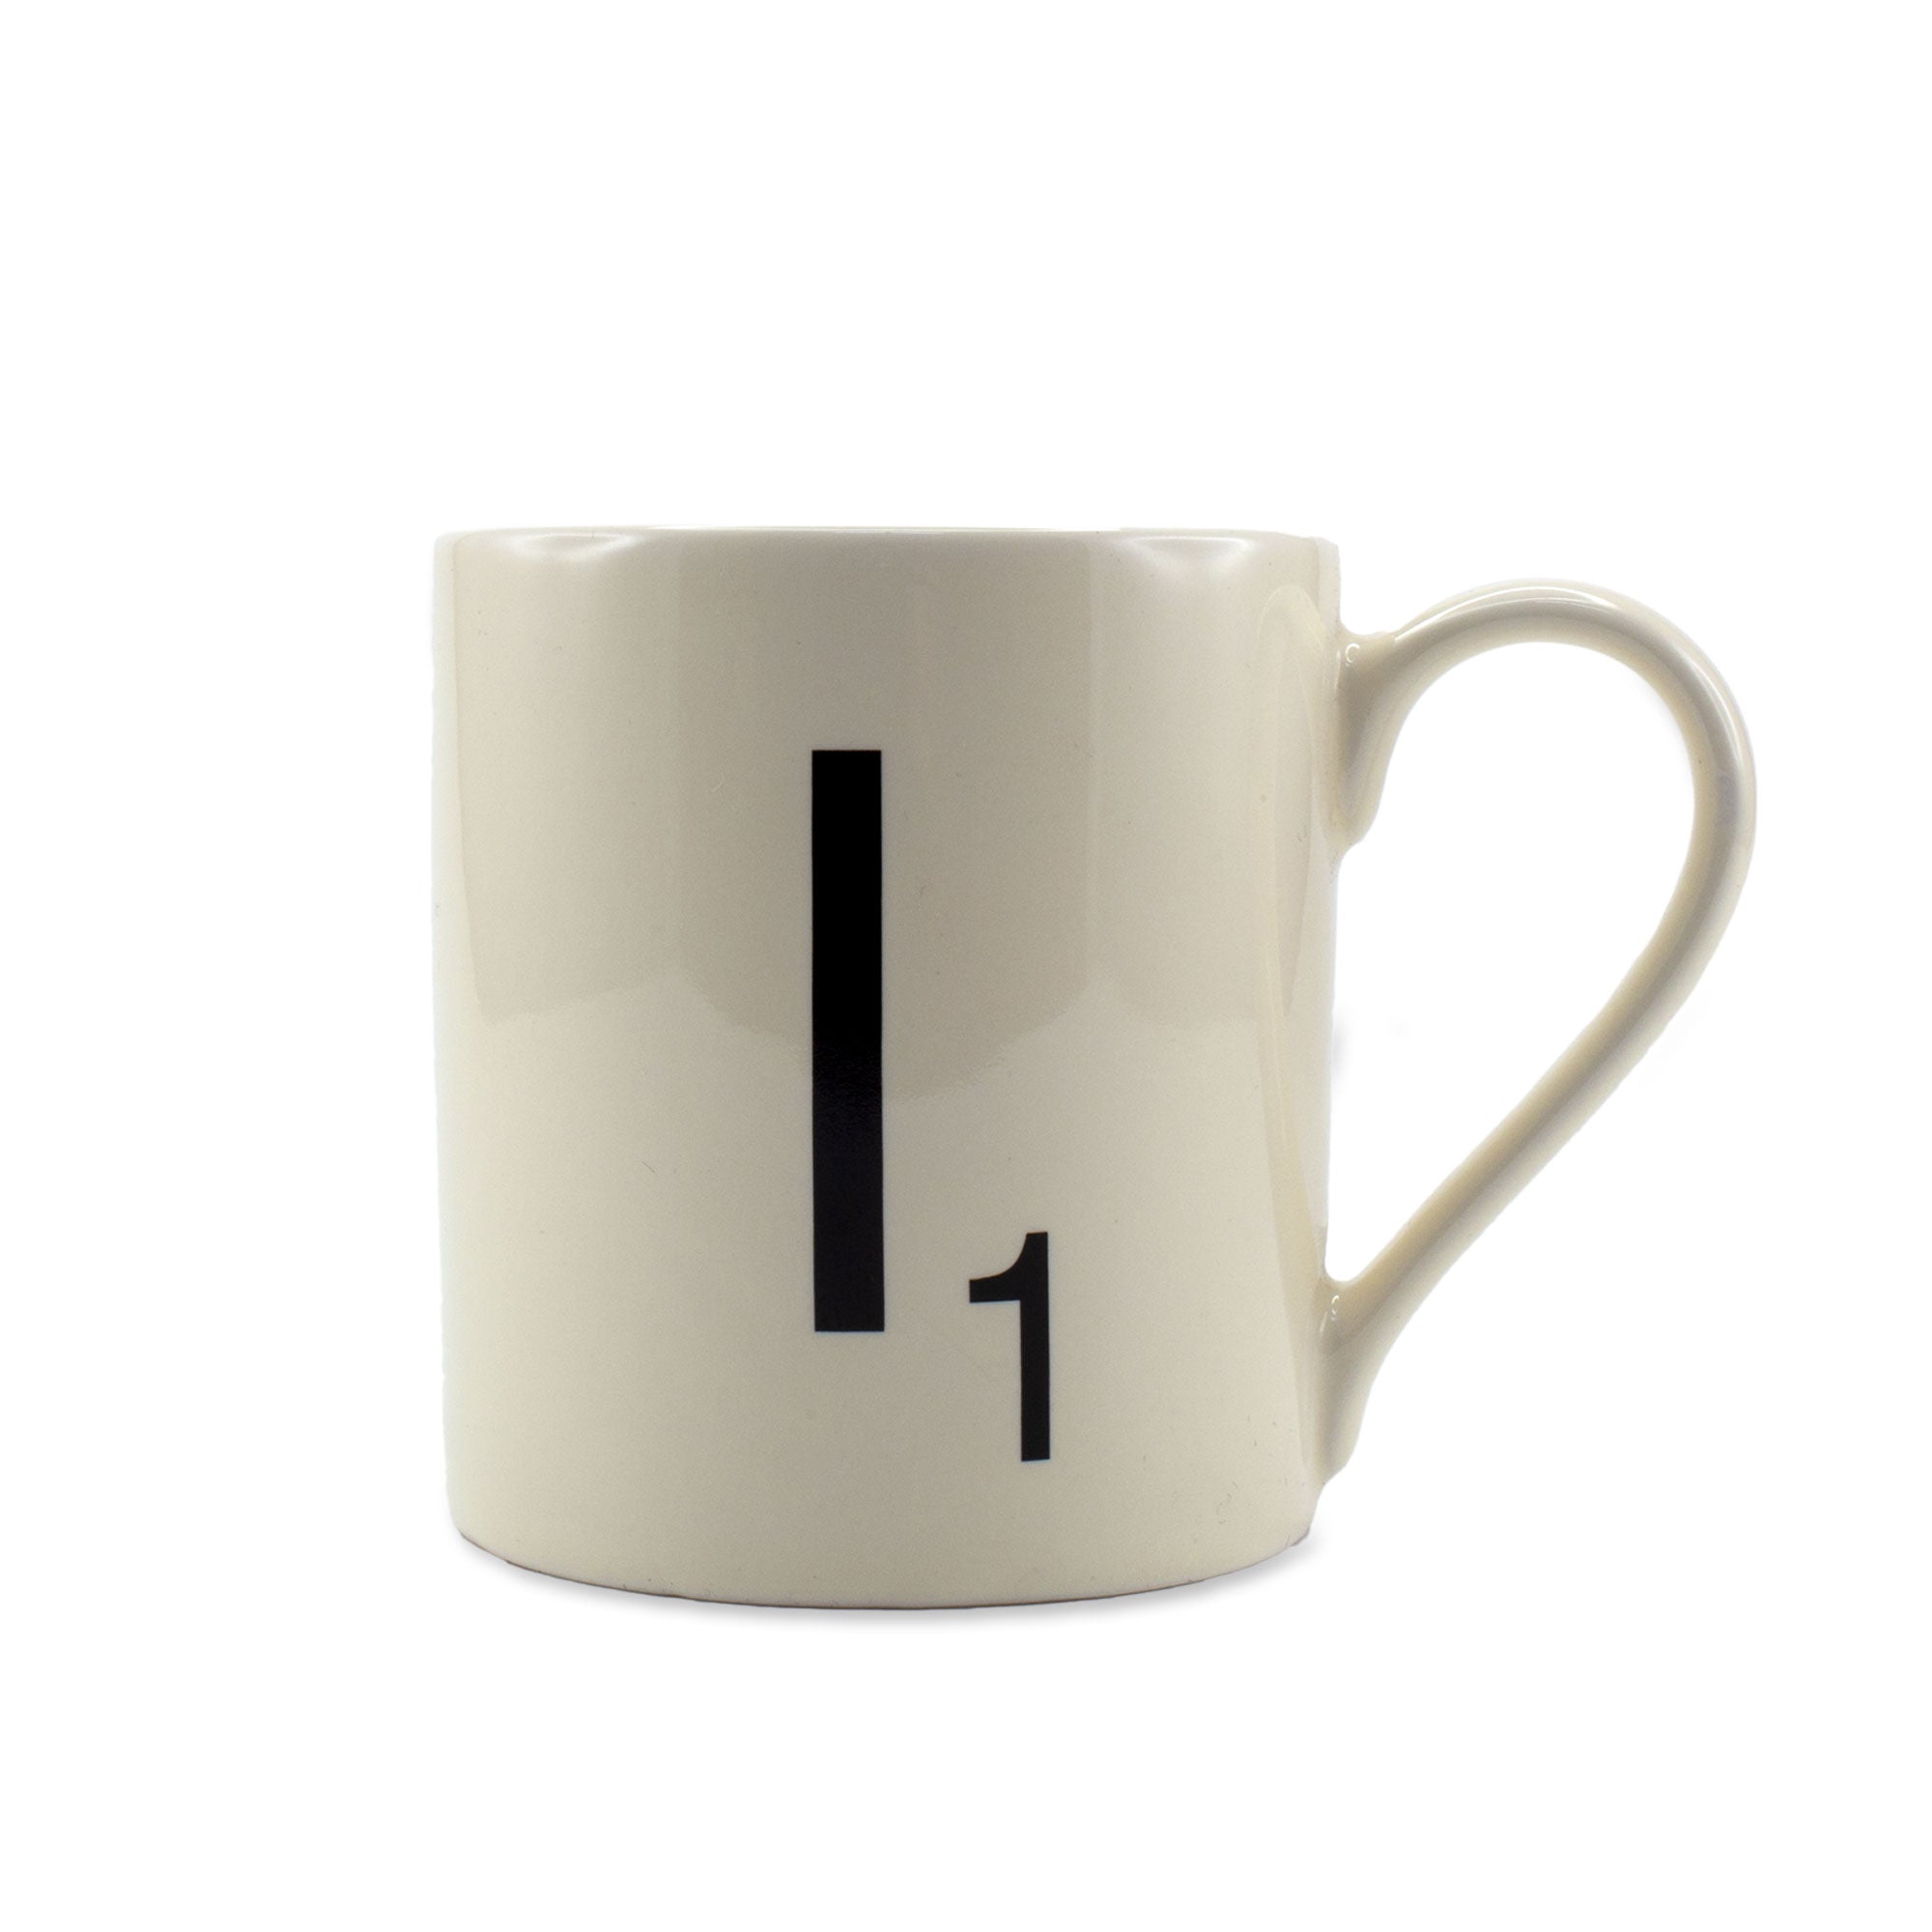 Scrabble Mug